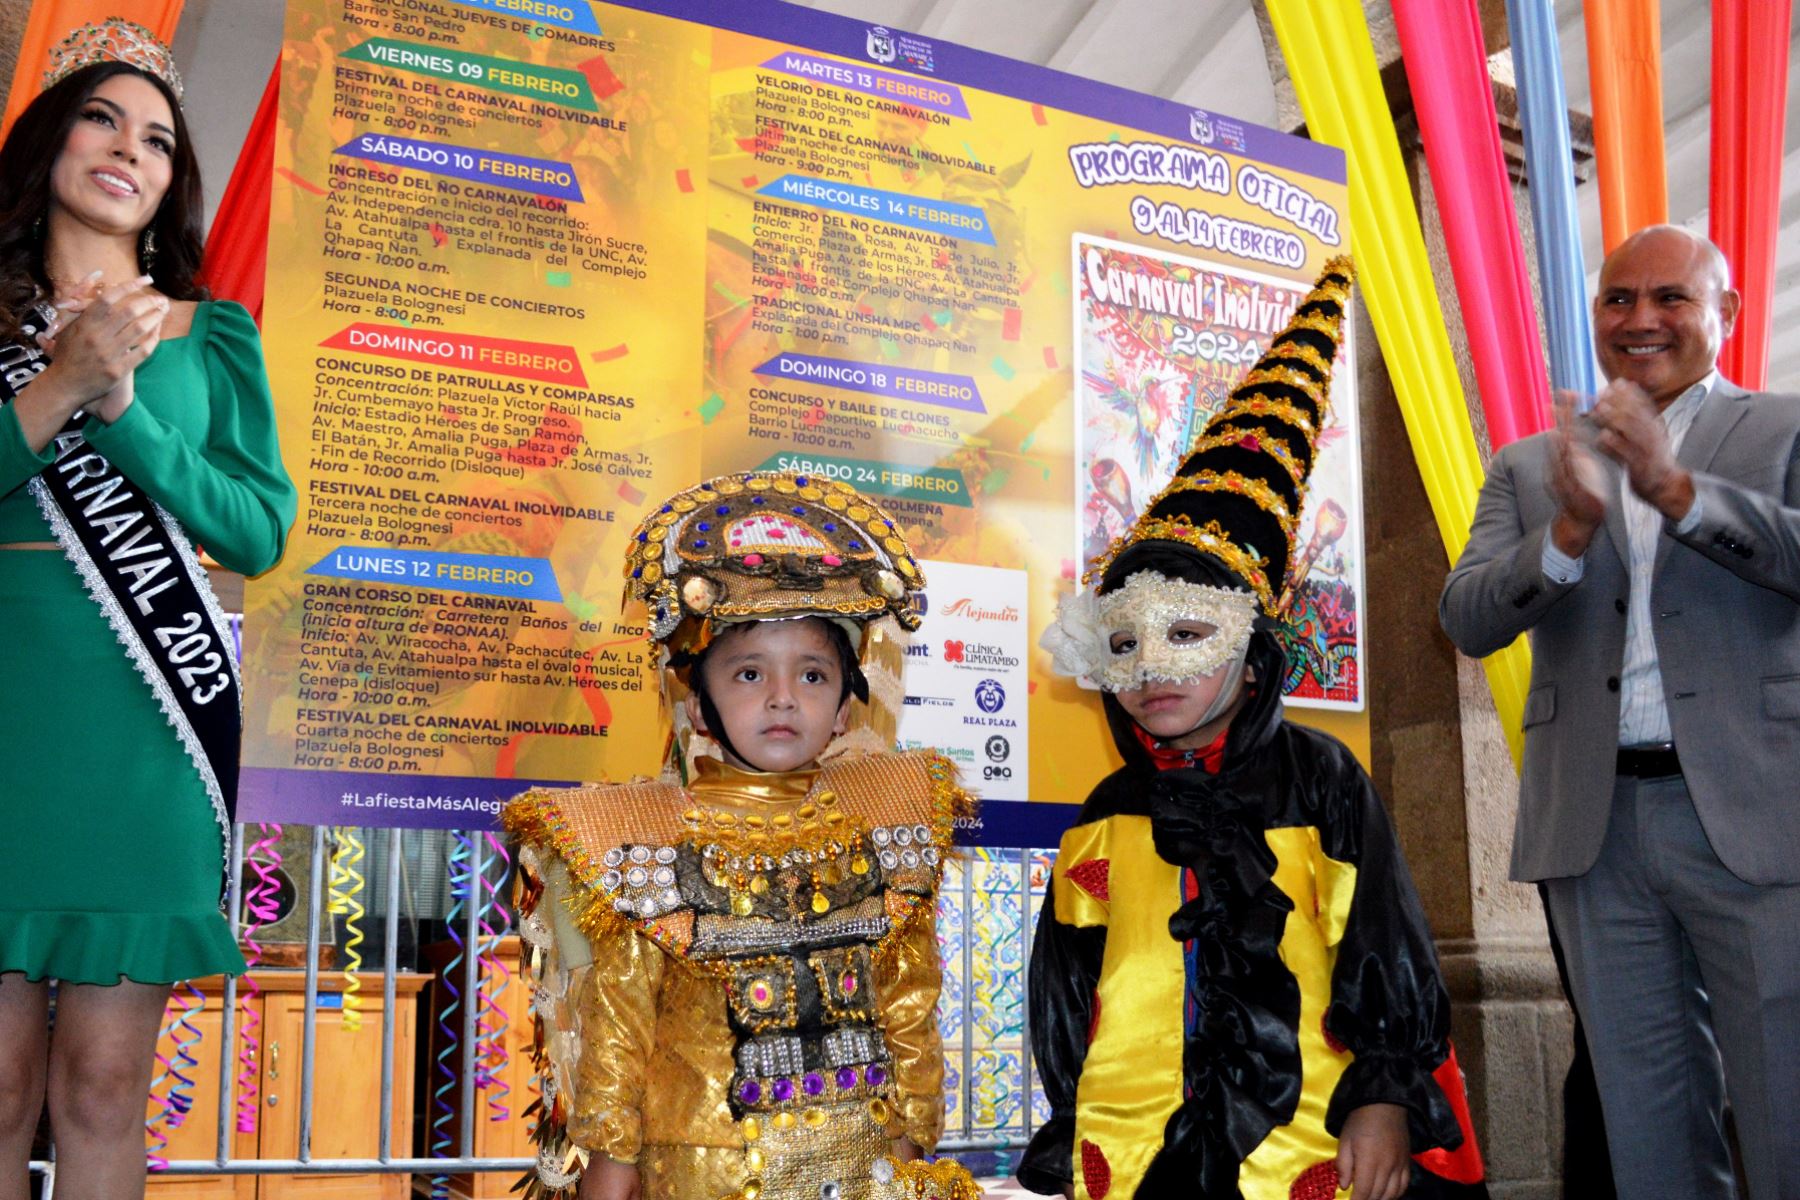 La edición del Carnaval de Cajamarca del 2023 dejó utilidades por 120,000 soles; este año prevé atraer a más turistas. Foto: ANDINA/Cortesía Eduard Lozano